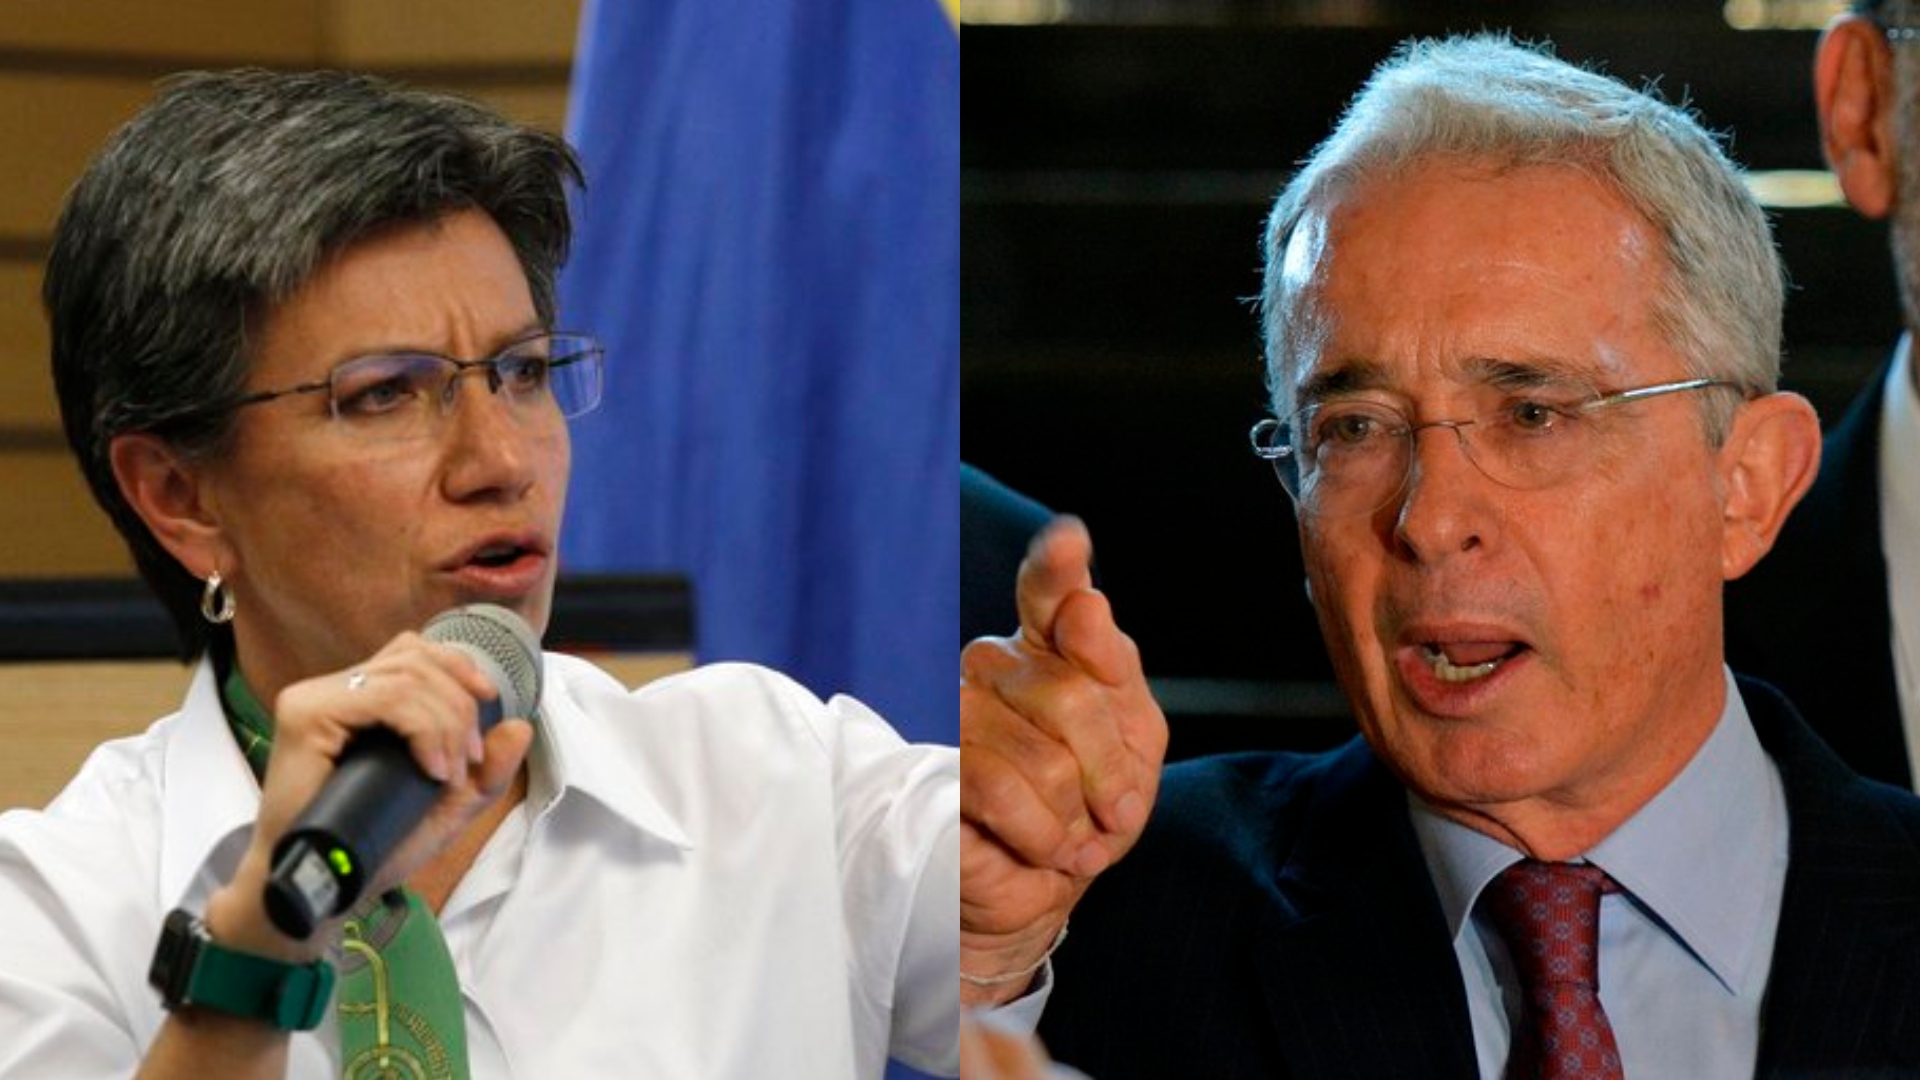 Claudia López reacciona al anuncio de Álvaro Uribe en el que congresistas  del CD no aceptarían aumento salarial - Infobae